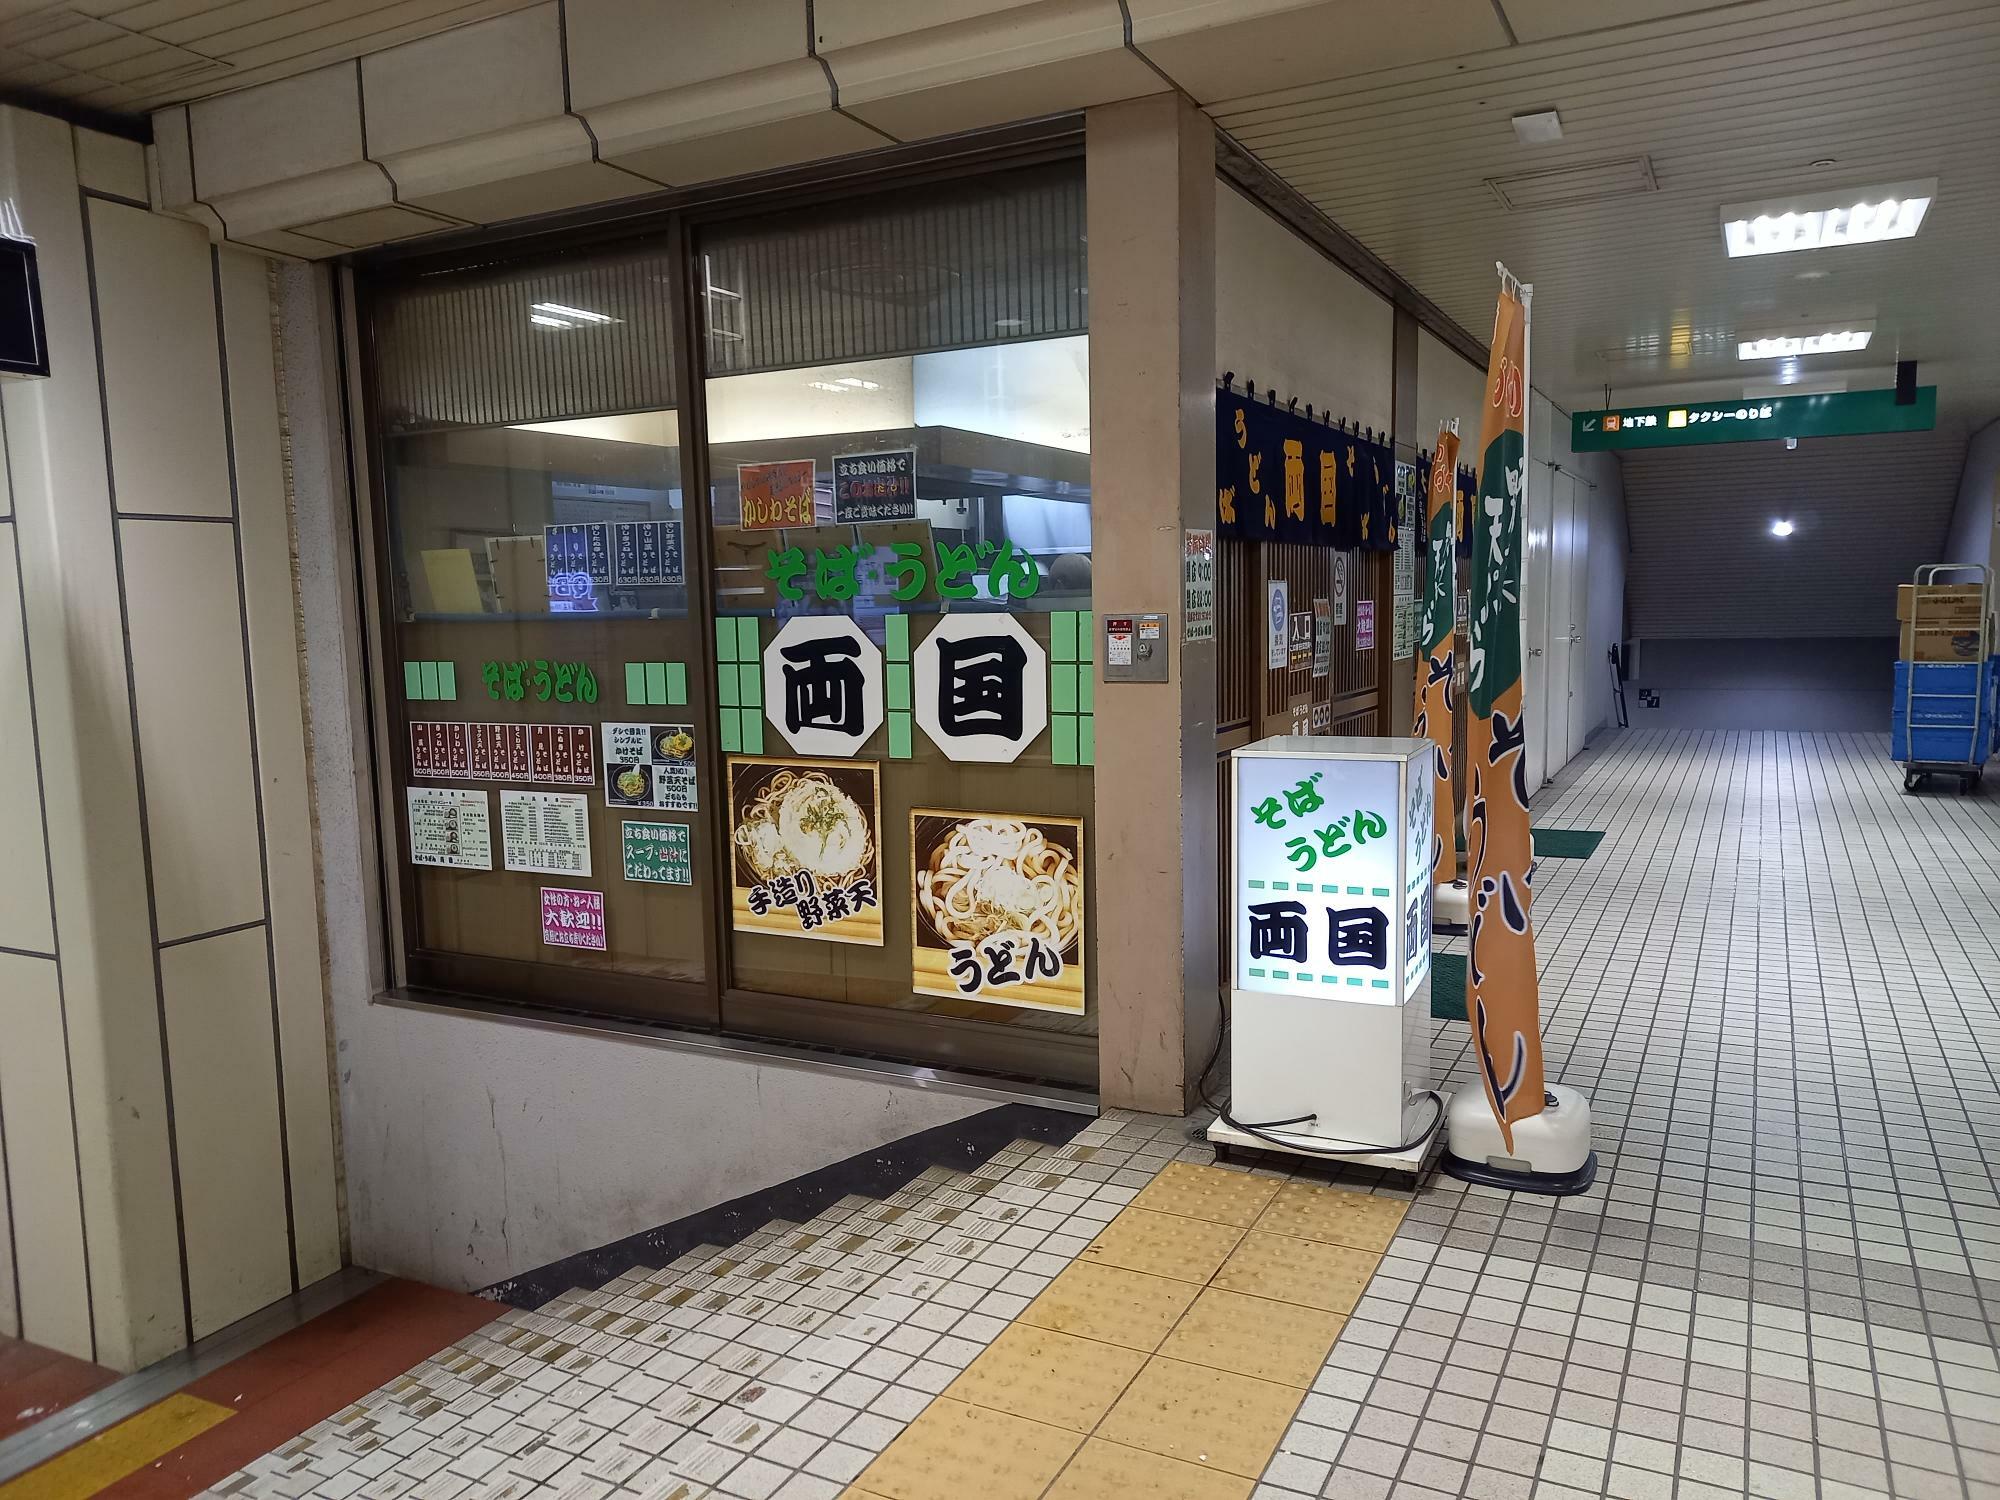 duo2の2階ということですが、JR新札幌駅を出て、サンピアザ方向に向かってすぐ左手にあります。